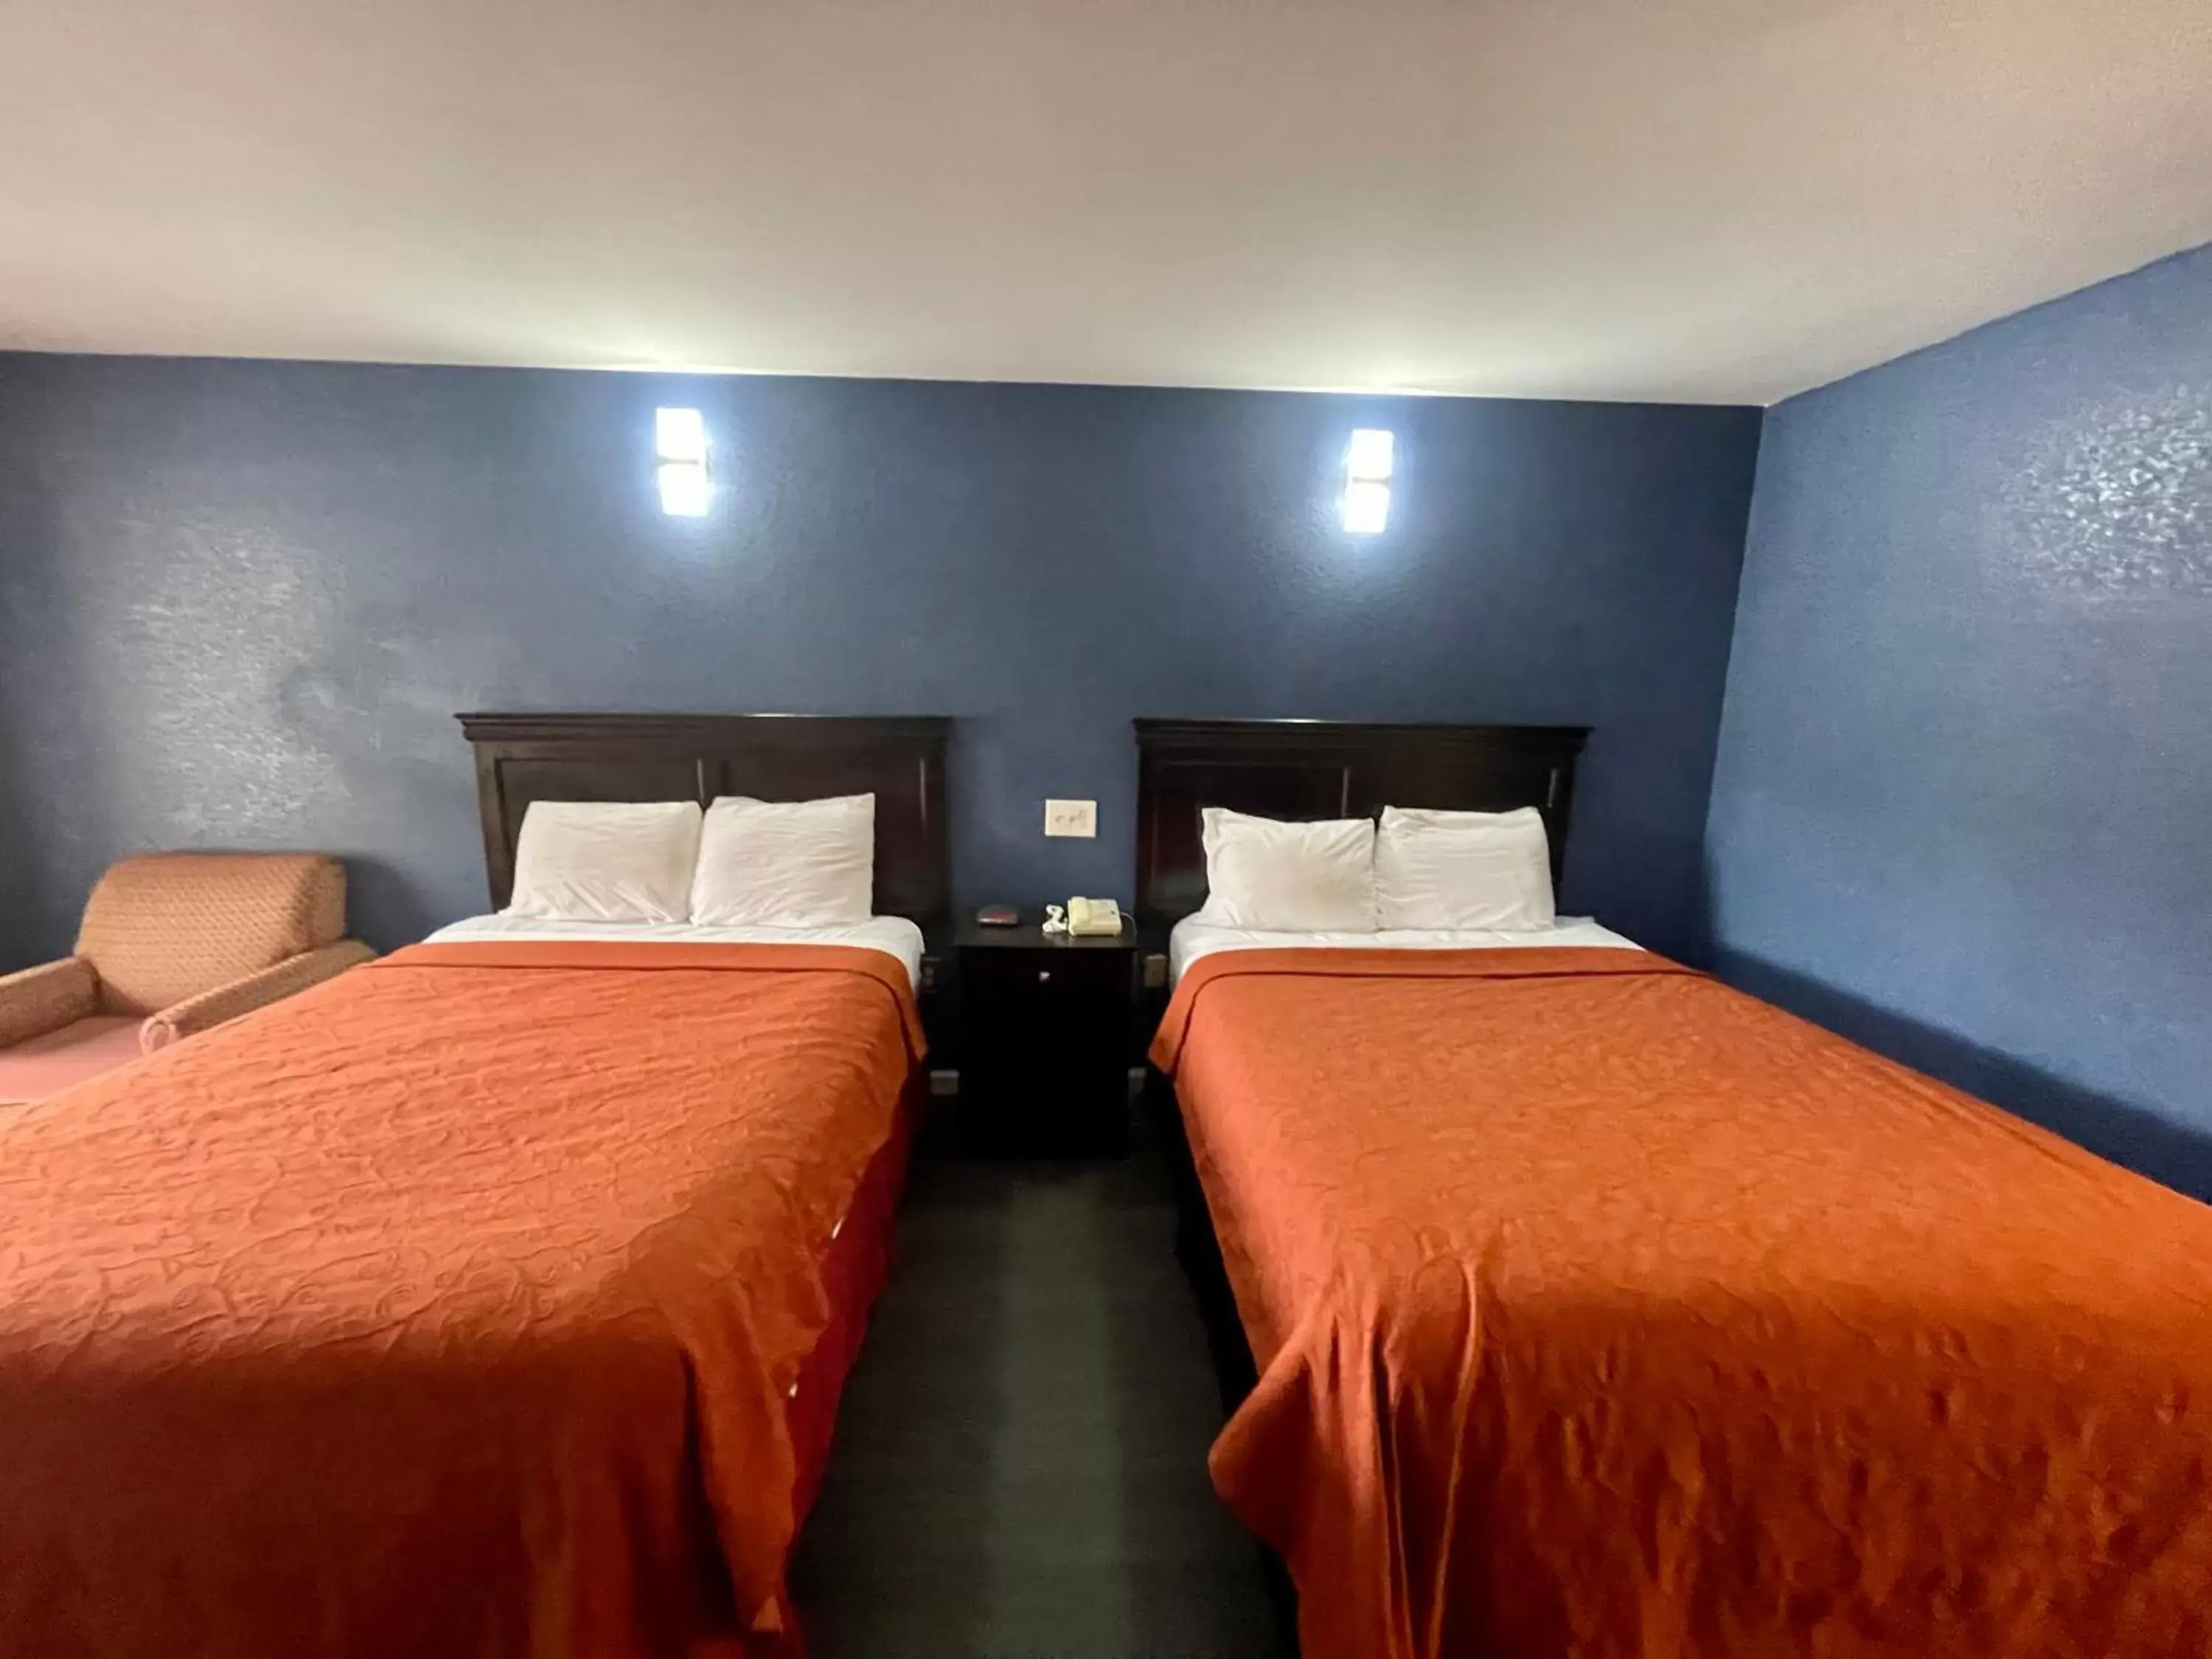 Bed in Key West Inn - Roanoke